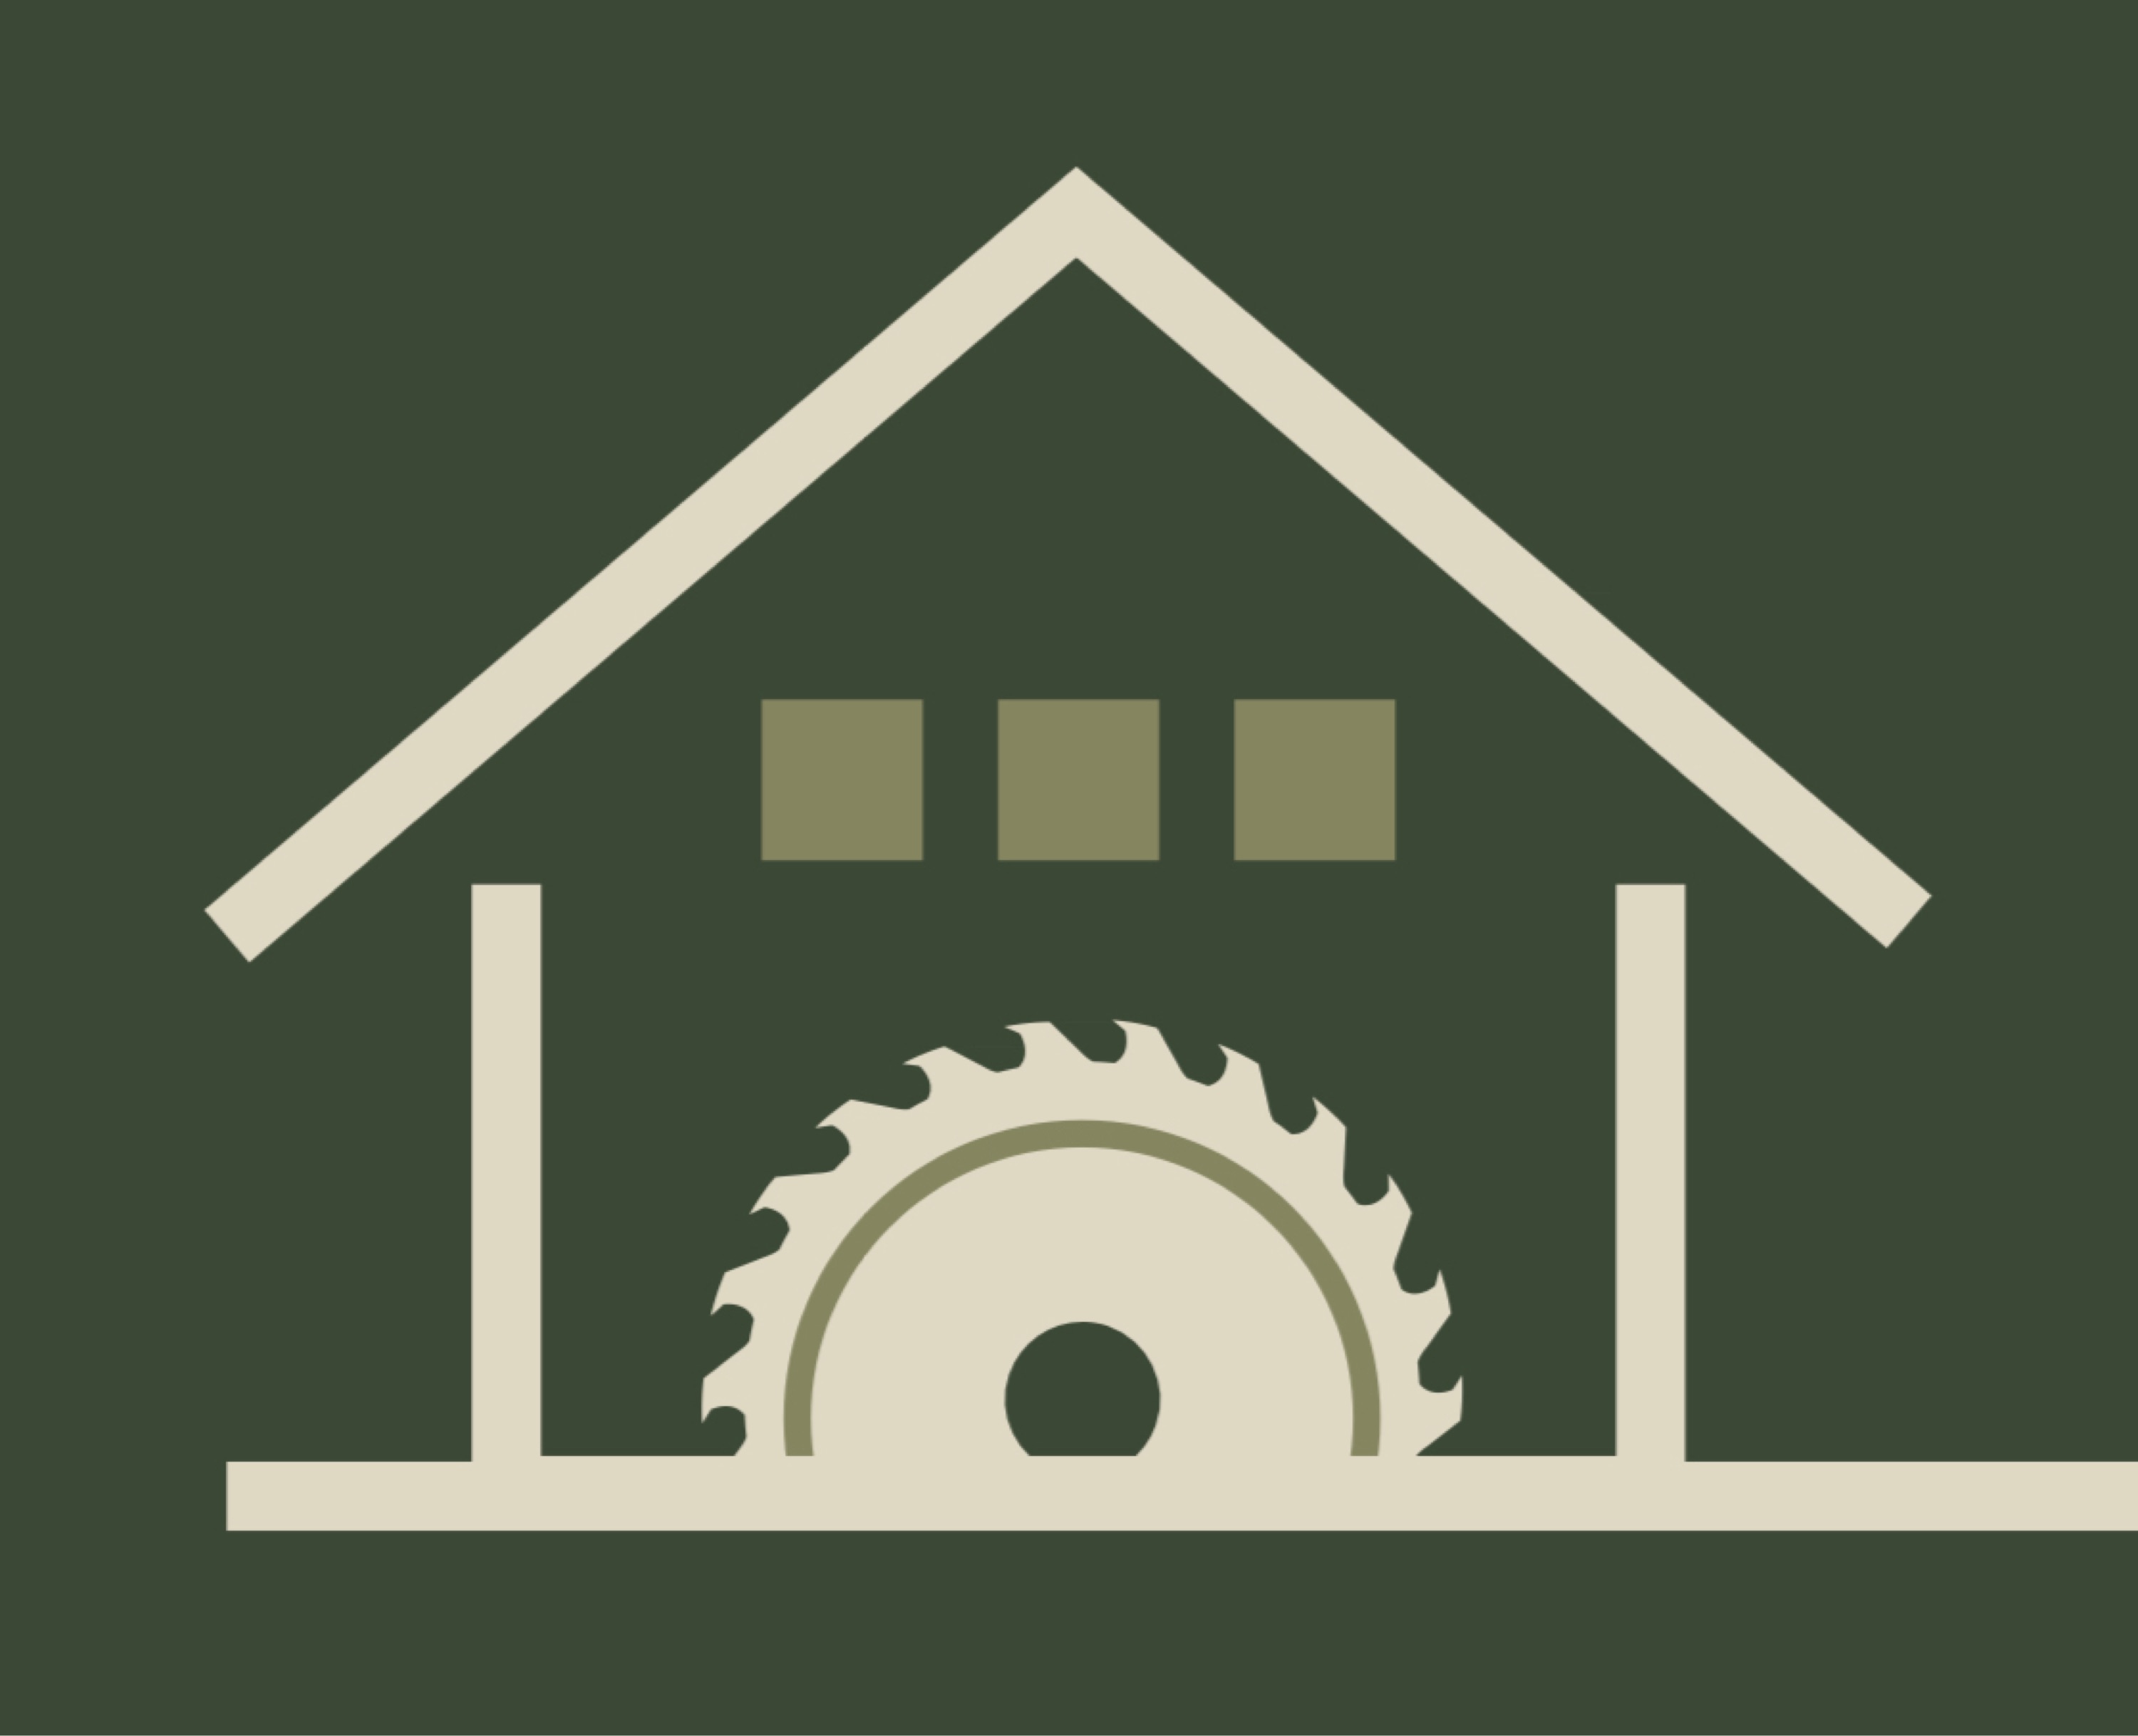 Cedar Mill Construction Logo